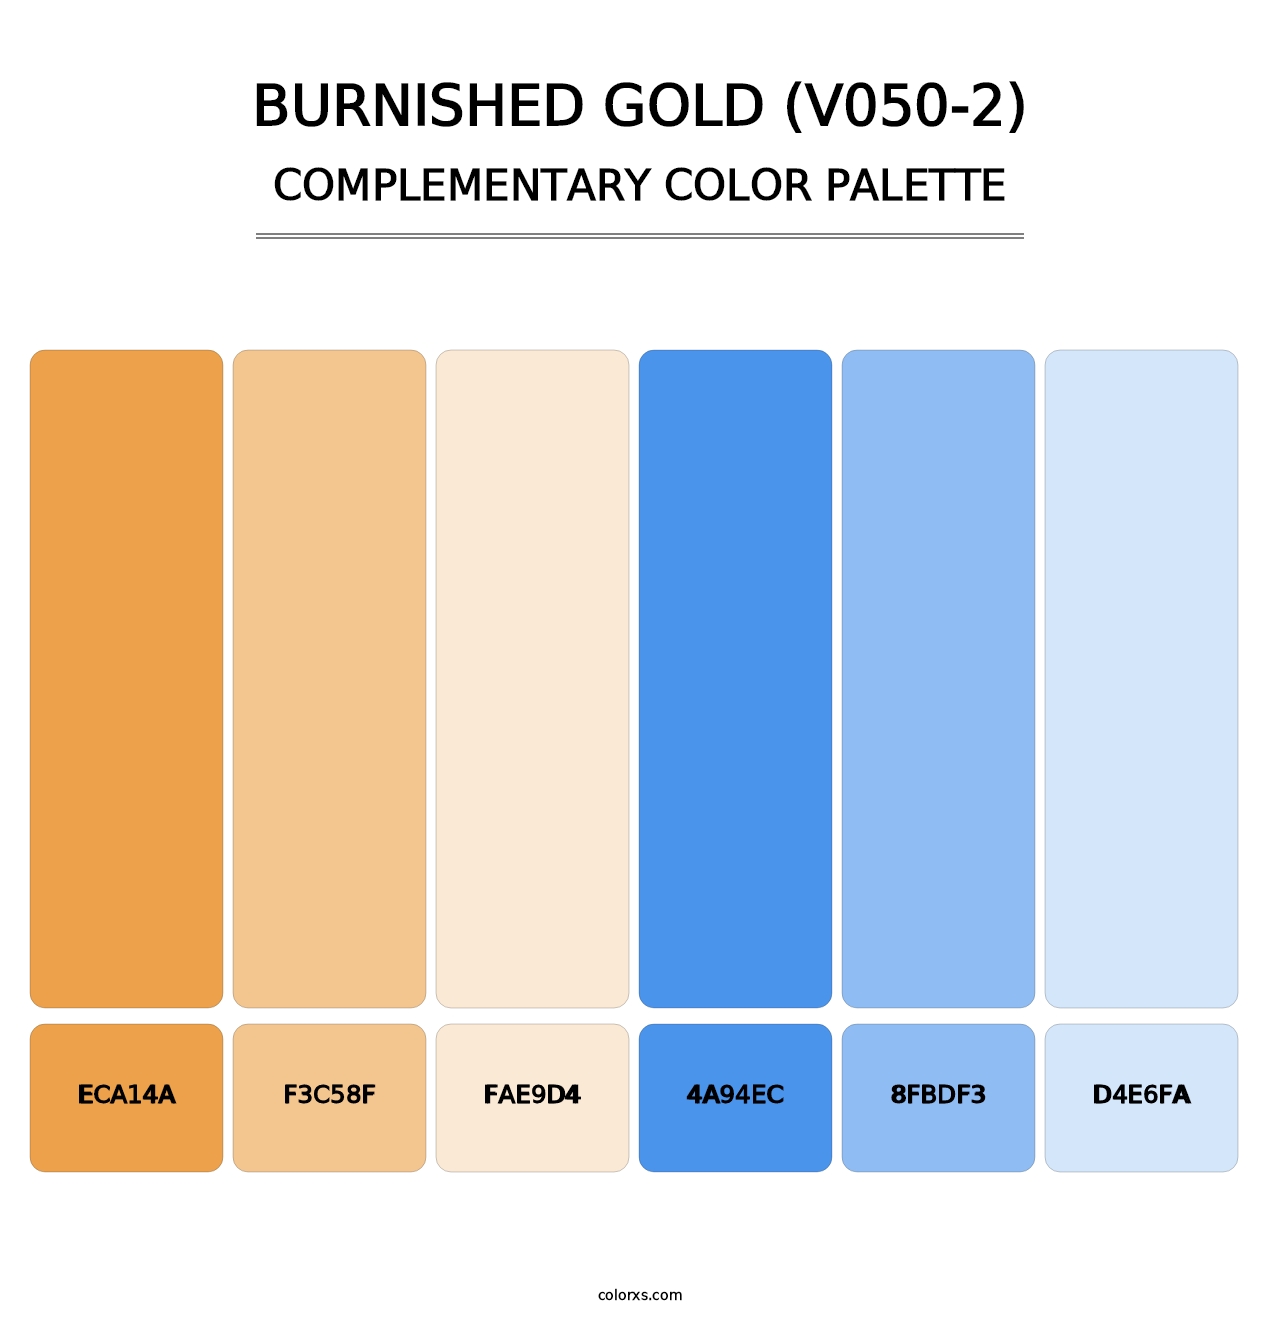 Burnished Gold (V050-2) - Complementary Color Palette